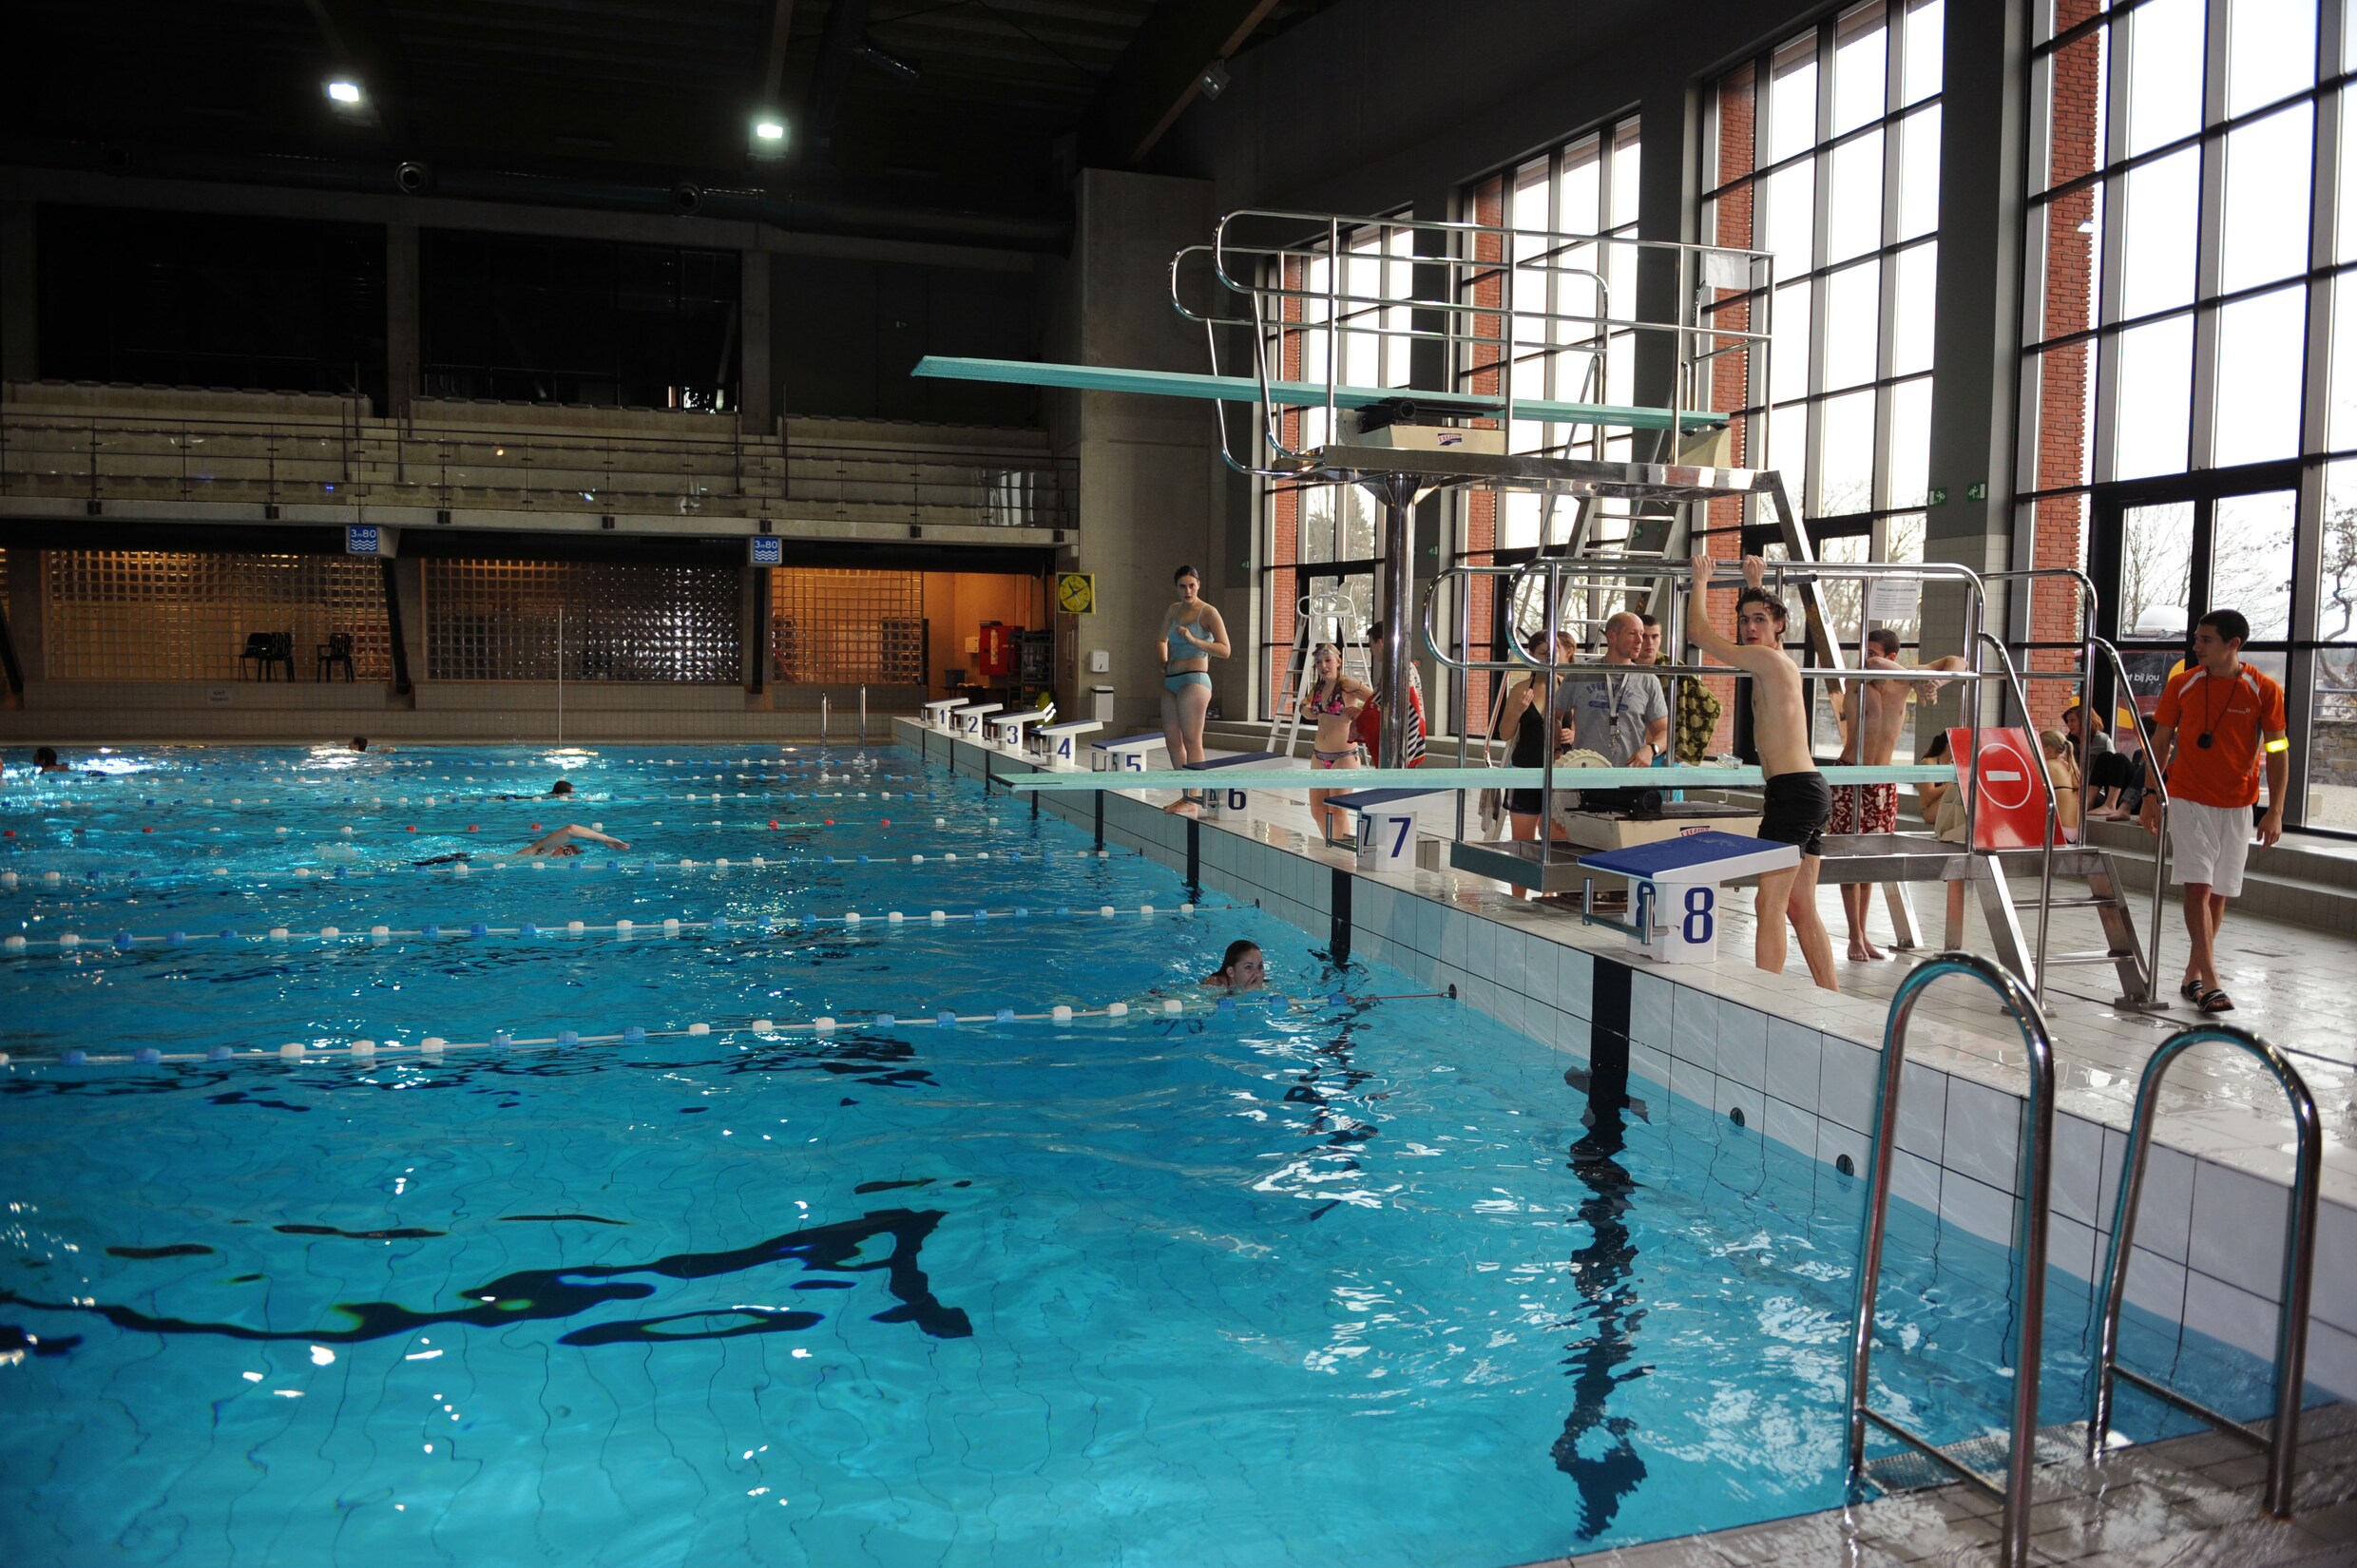 Meisje (6) kritiek nadat redders haar uit zwembad Sportoase halen